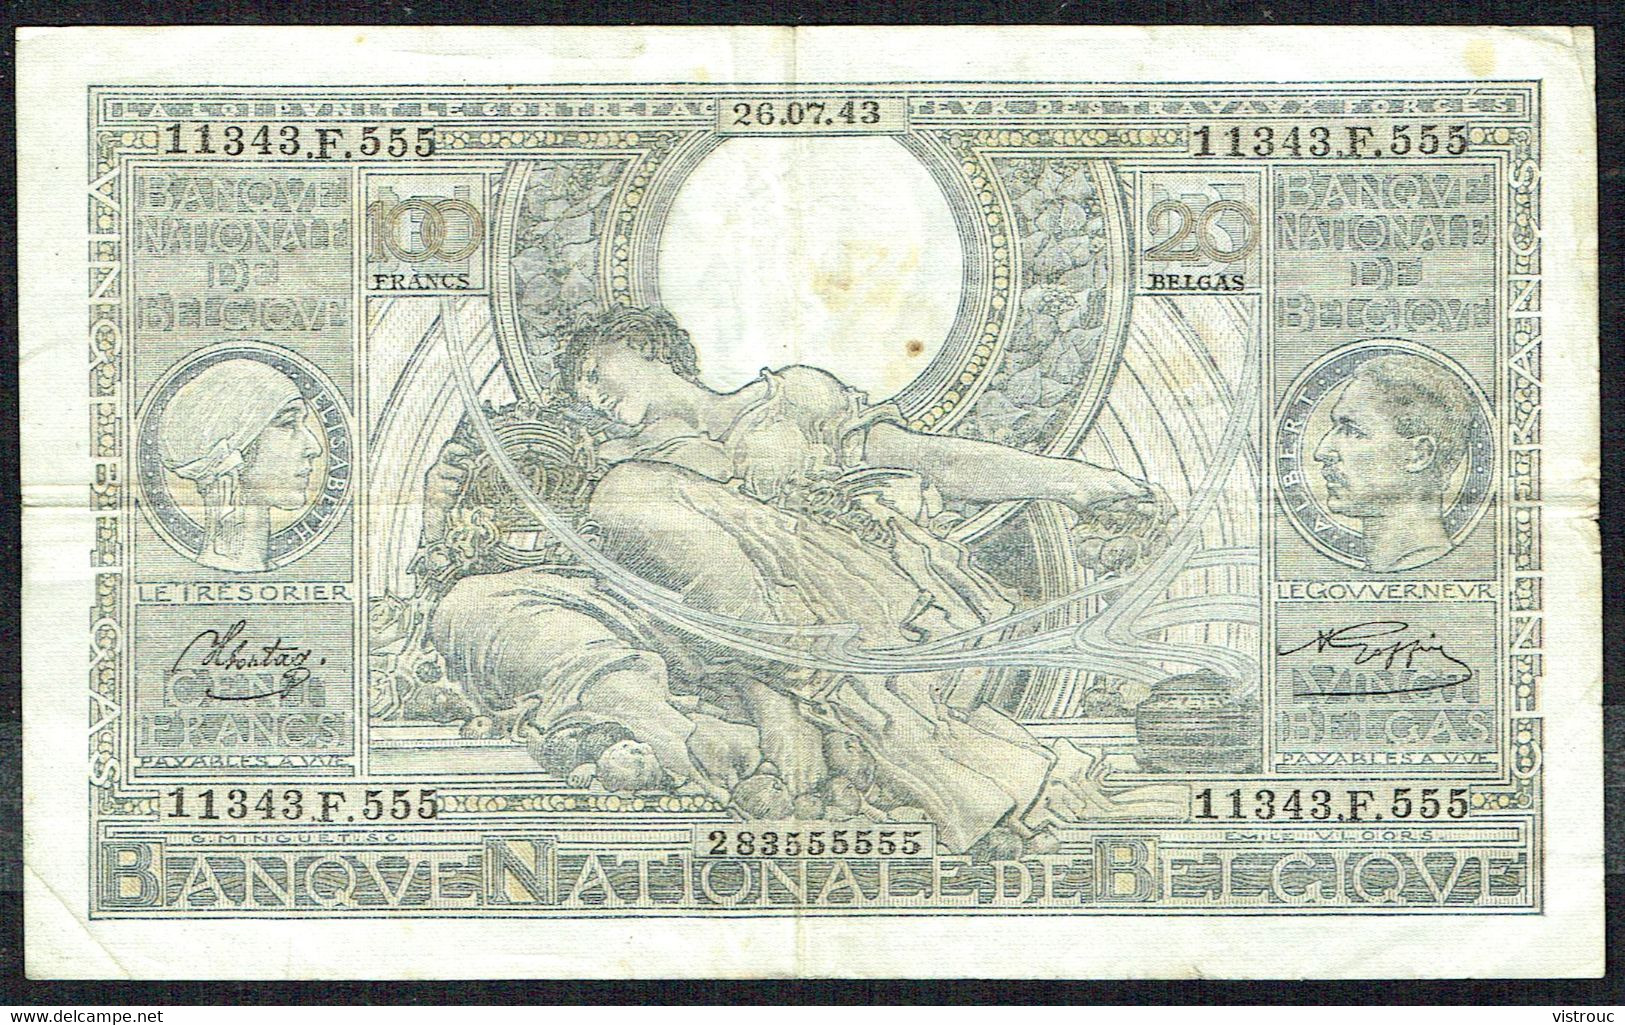 BELGIQUE - 100 Francs / 20 BELGAS - 26/07/1943 - N° 11343.F.555 - 100 Francos & 100 Francos-20 Belgas